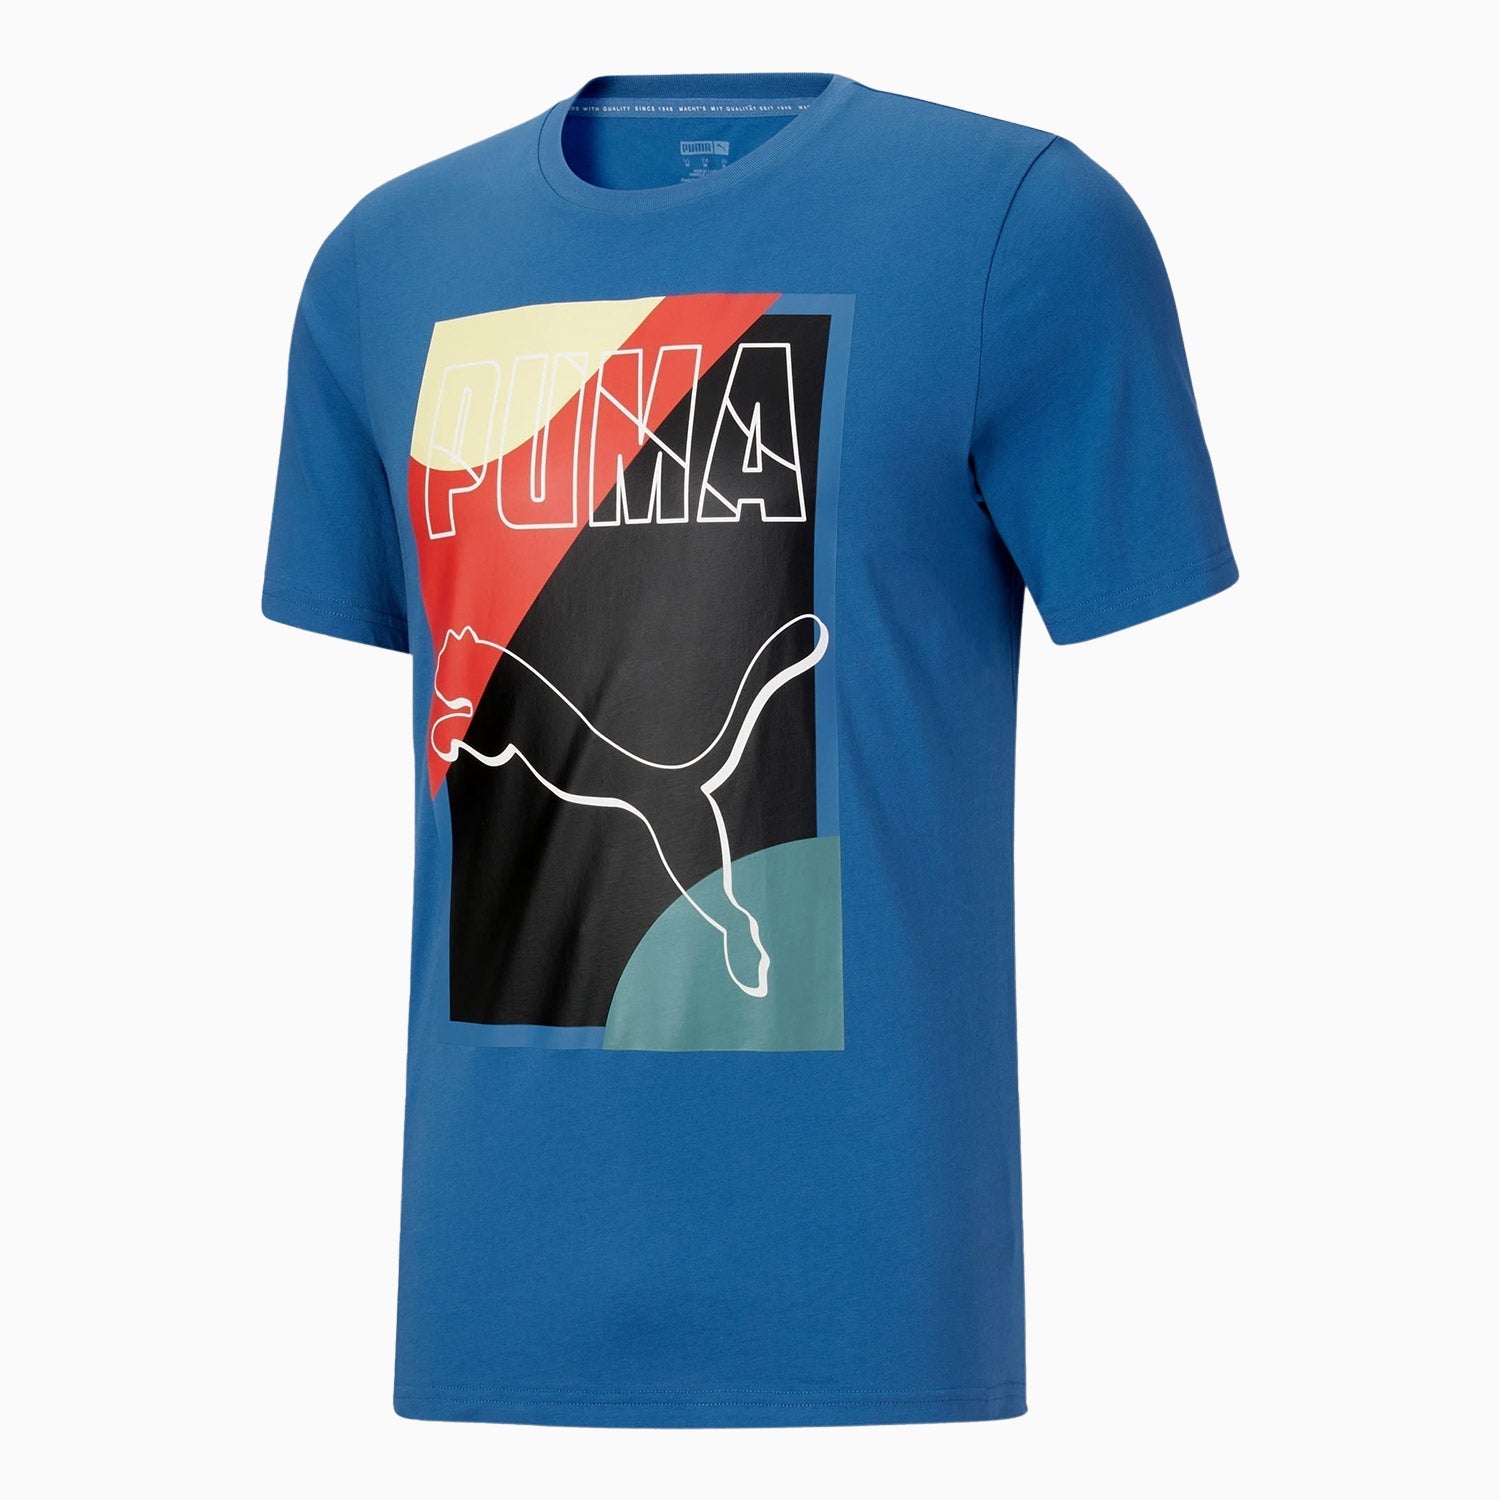 puma-mens-go-for-graphic-t-shirt-535568-48